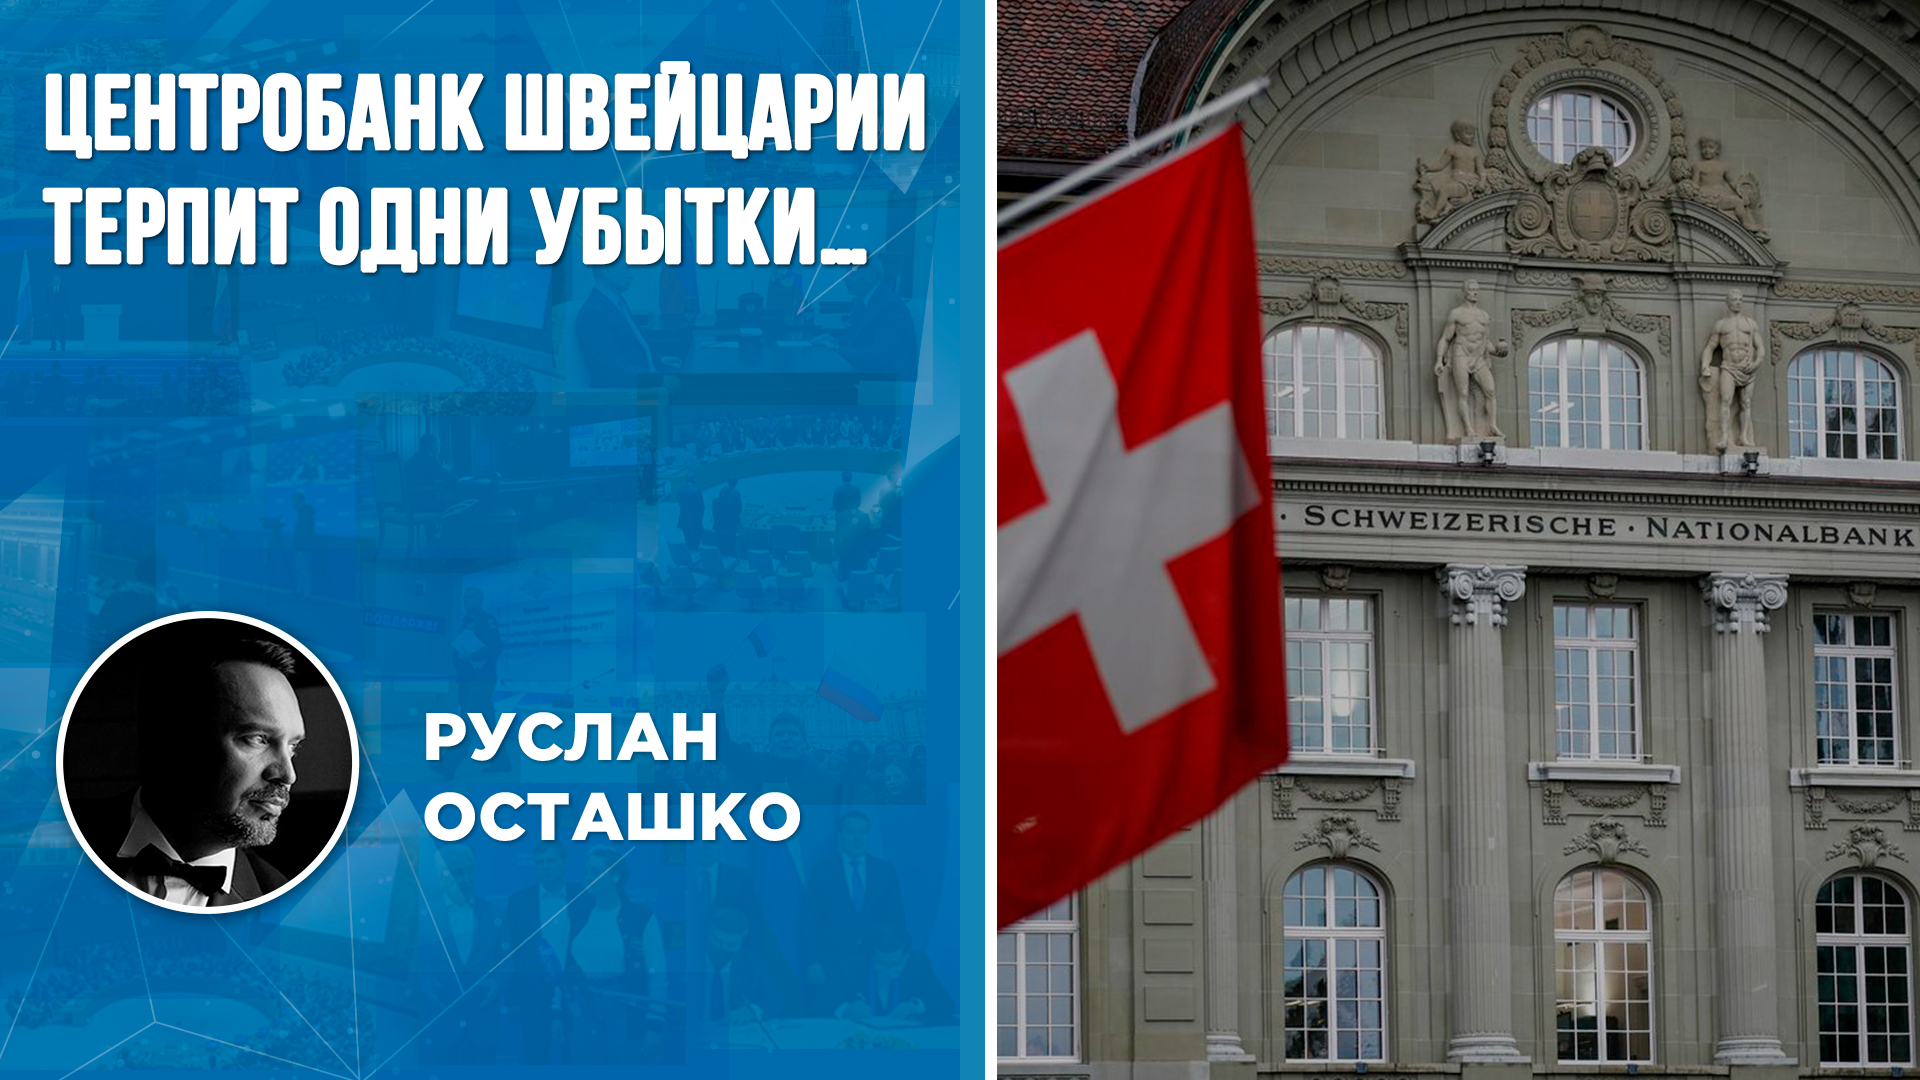 Центробанк Швейцарии терпит одни убытки…(Руслан Осташко)